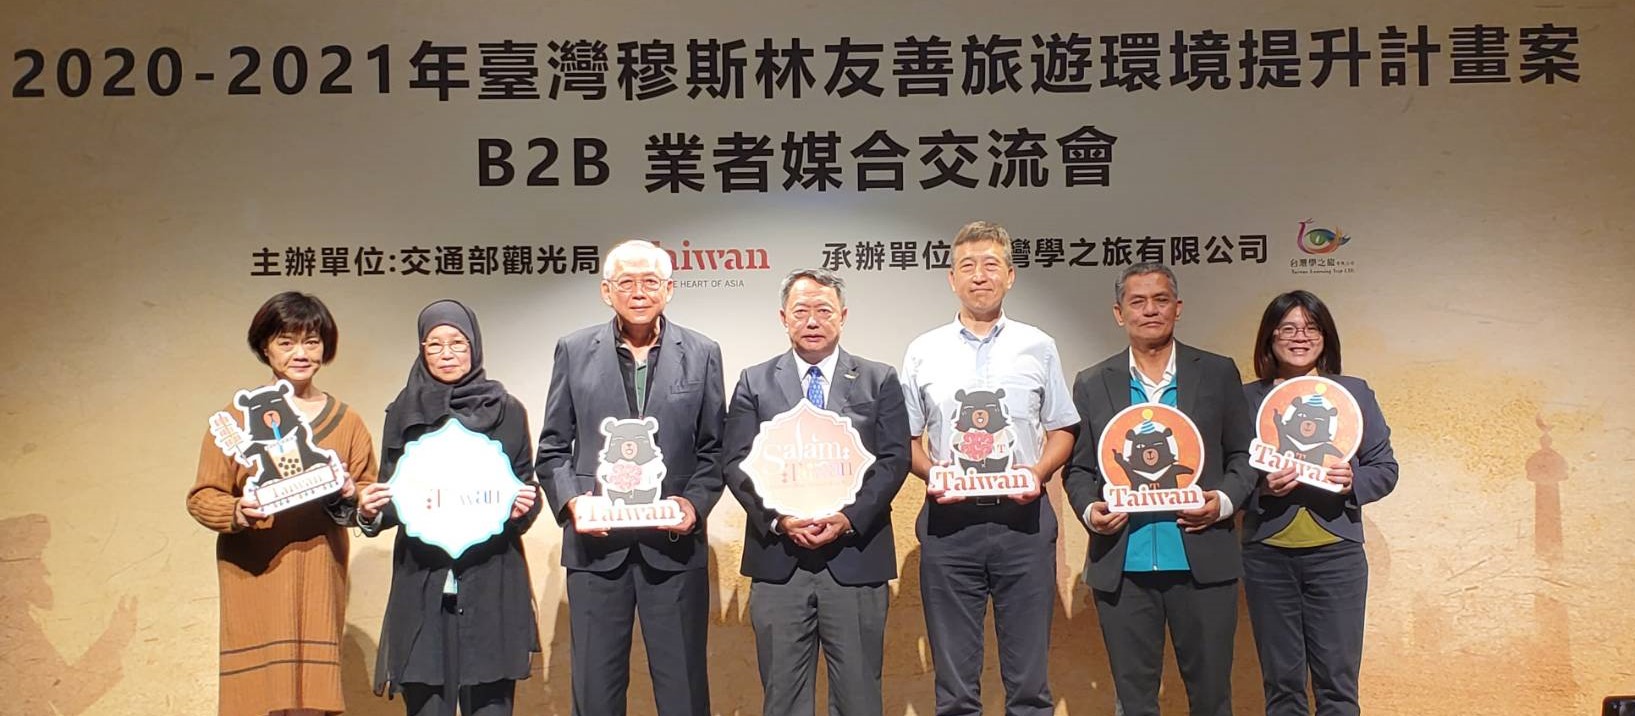 Hội nghị Giao lưu doanh nghiệp B2B xây dựng môi trường du lịch thân thiện với người Hồi giáo đã được tổ chức tại khách sạn Khải Đạt ở Đài Bắc. (Nguồn ảnh: Bộ Giao thông)